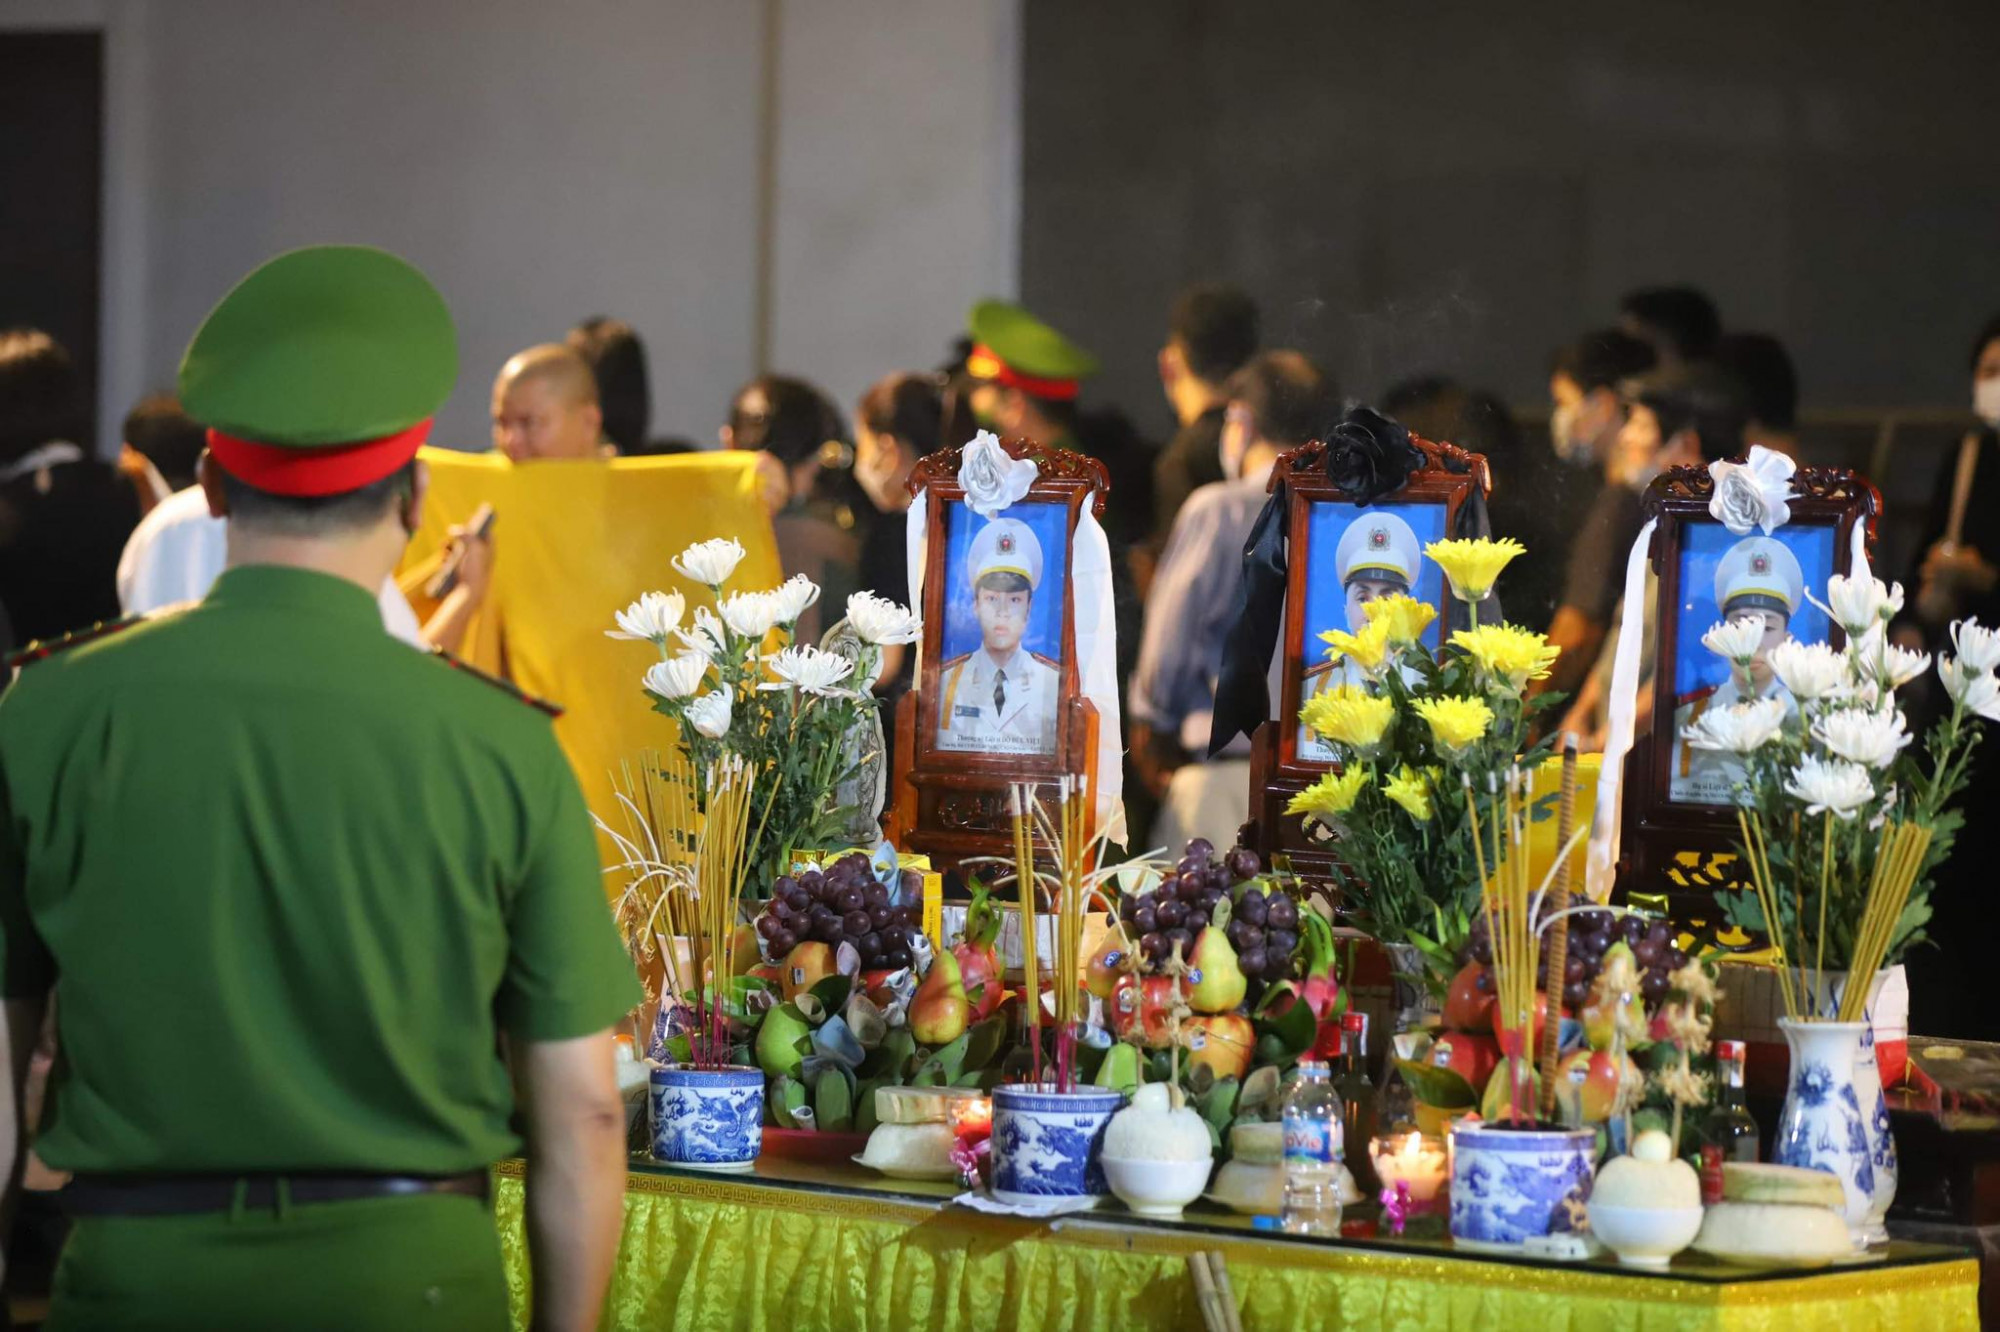 Sáng nay, Đảng ủy Công an thành phố Hà Nội đã tổ chức trọng thể tang lễ theo nghi thức của lực lượng Công an nhân dân đối với 3 liệt sĩ - 3 người lính cứu hỏa đã hy sinh trong khi làm nhiệm vụ tại quận Cầu Giấy.